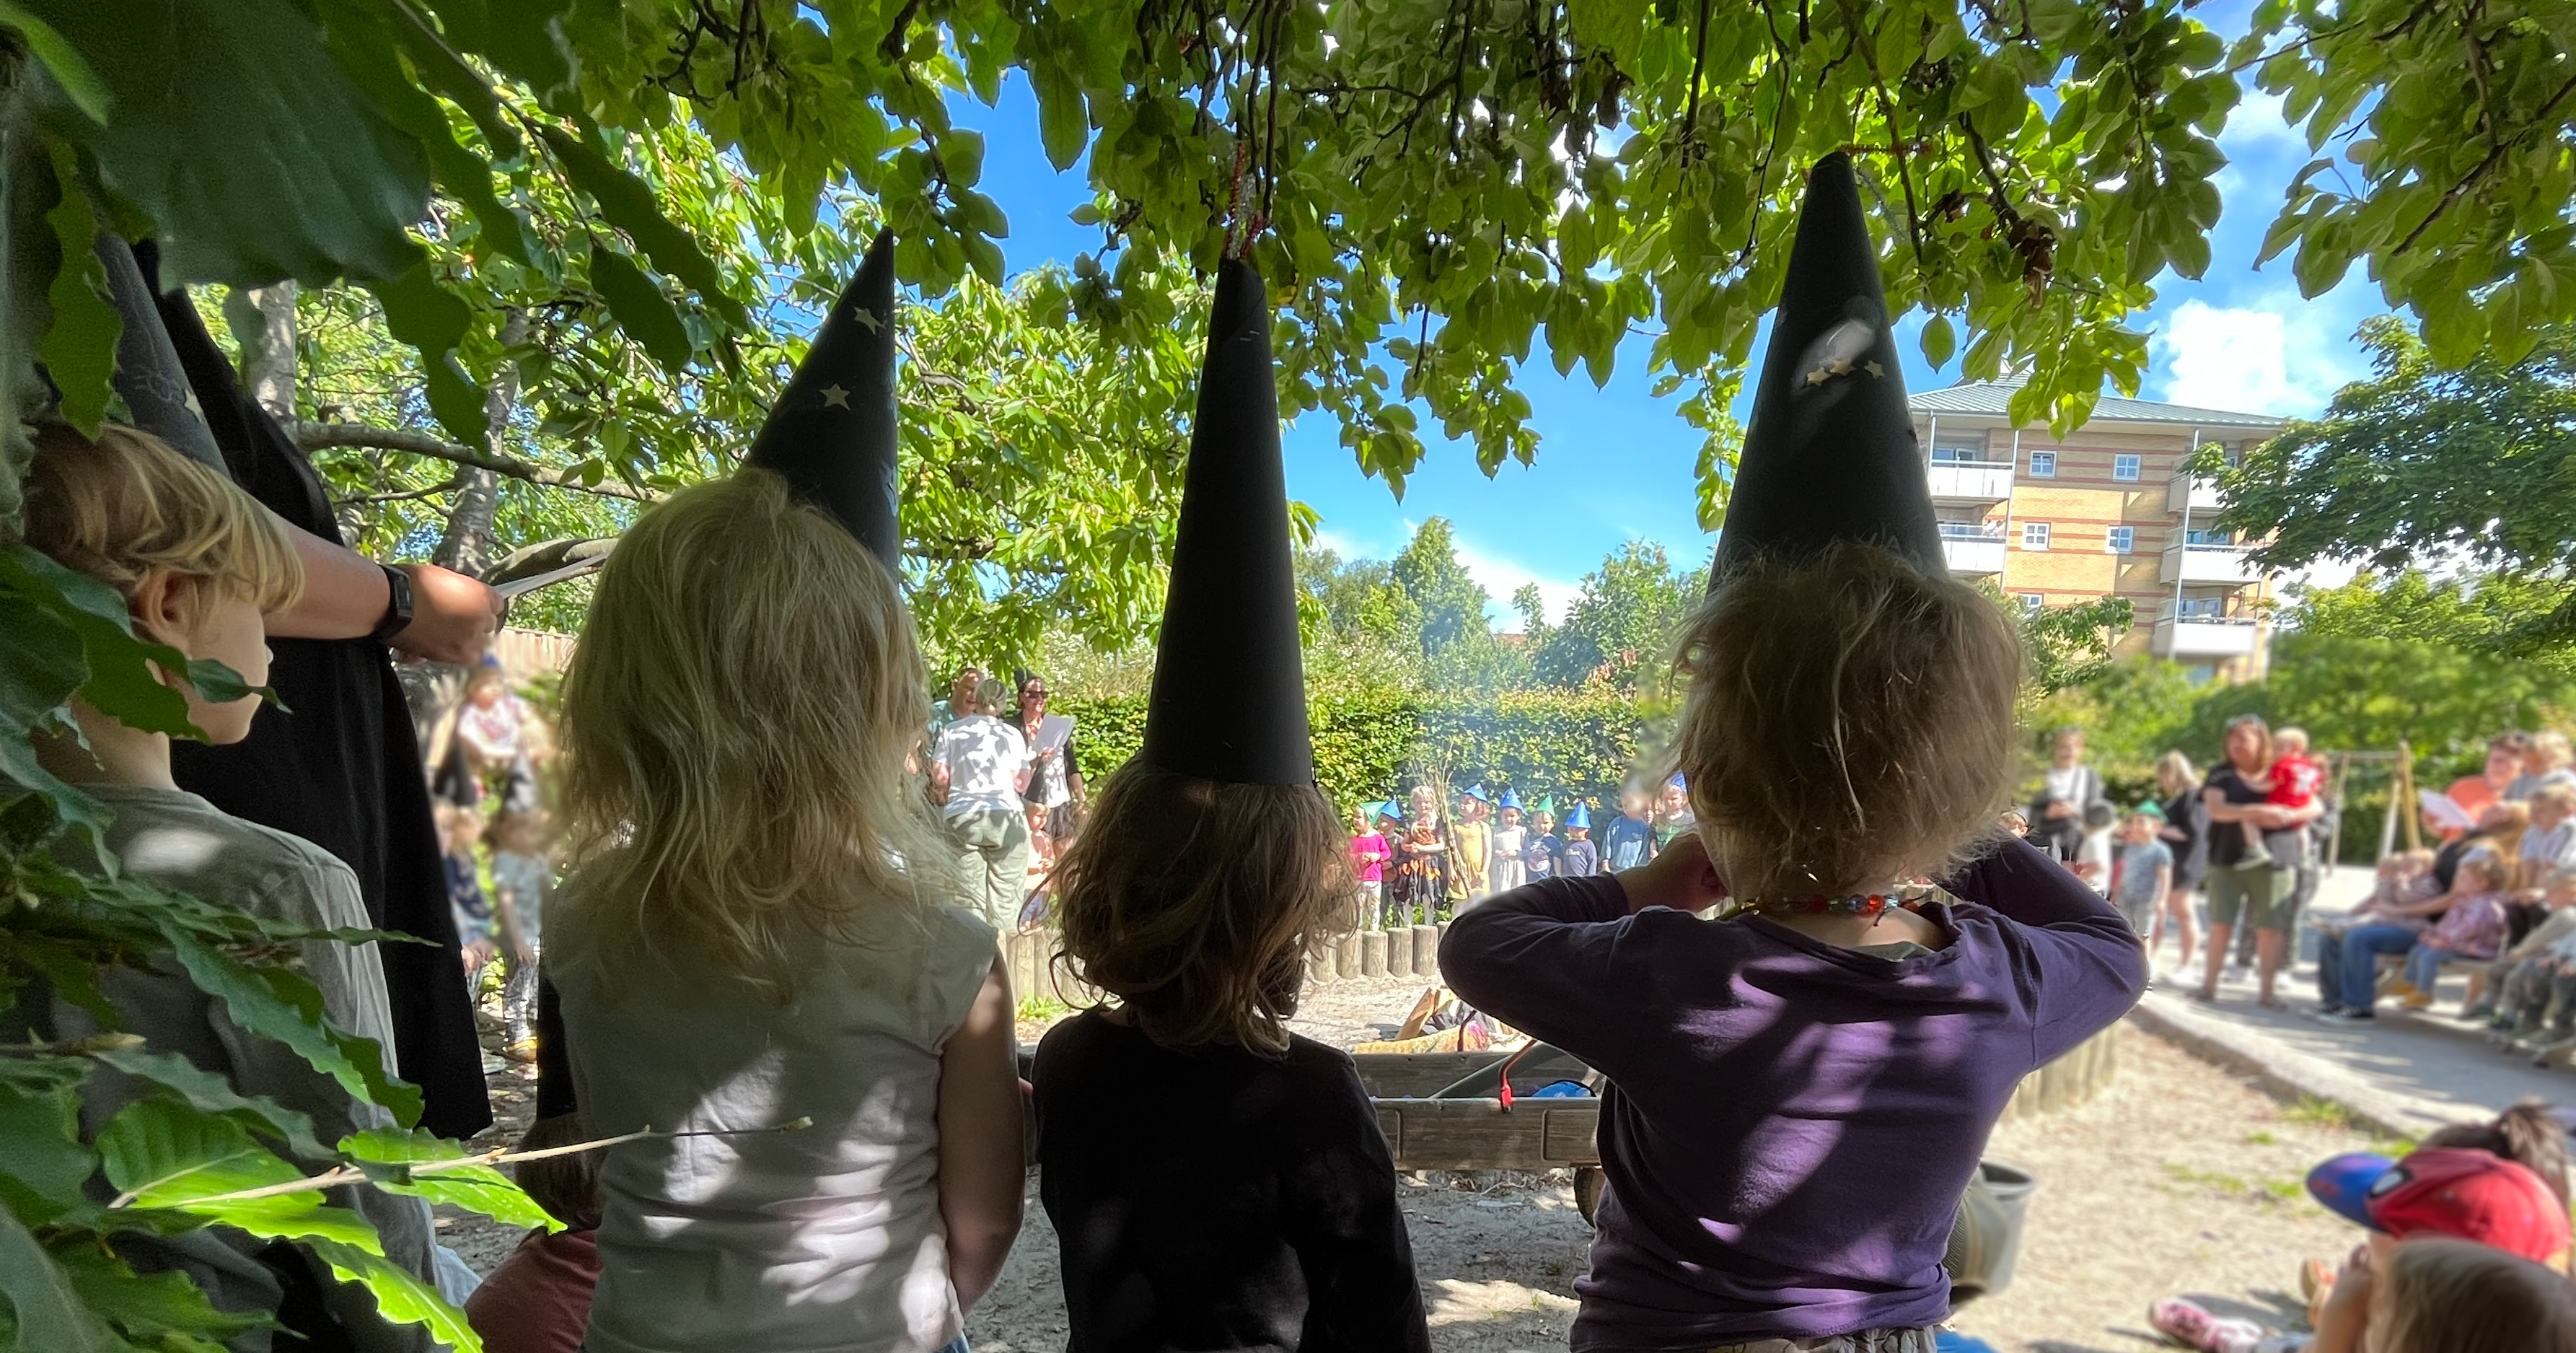 Billedet viser tre børn med spidse hatte i pap.